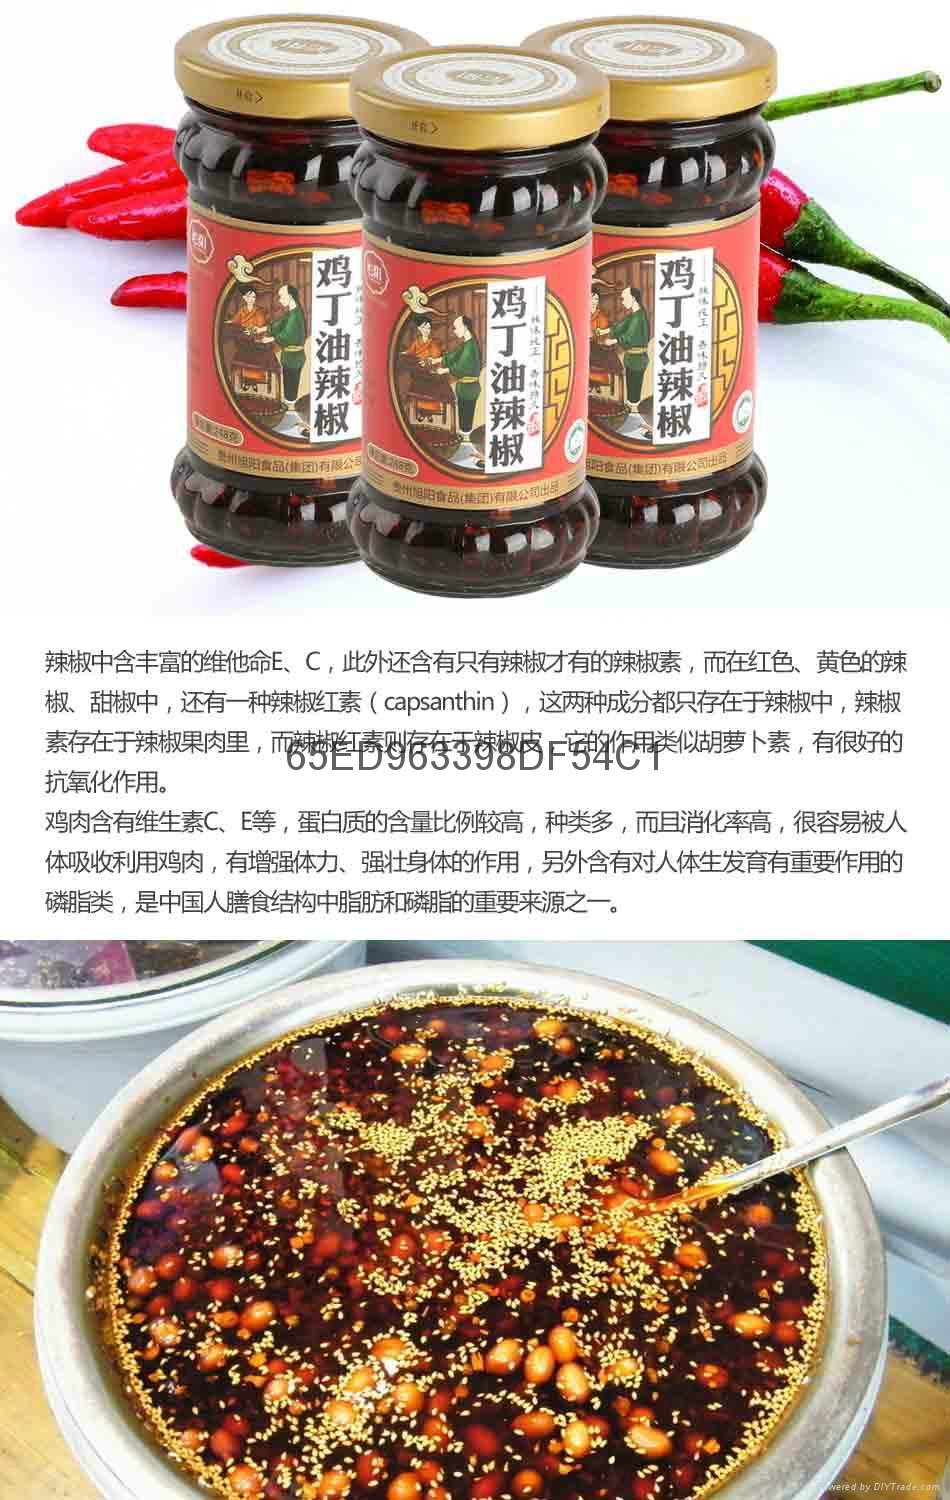 旭陽雞丁油辣椒 4